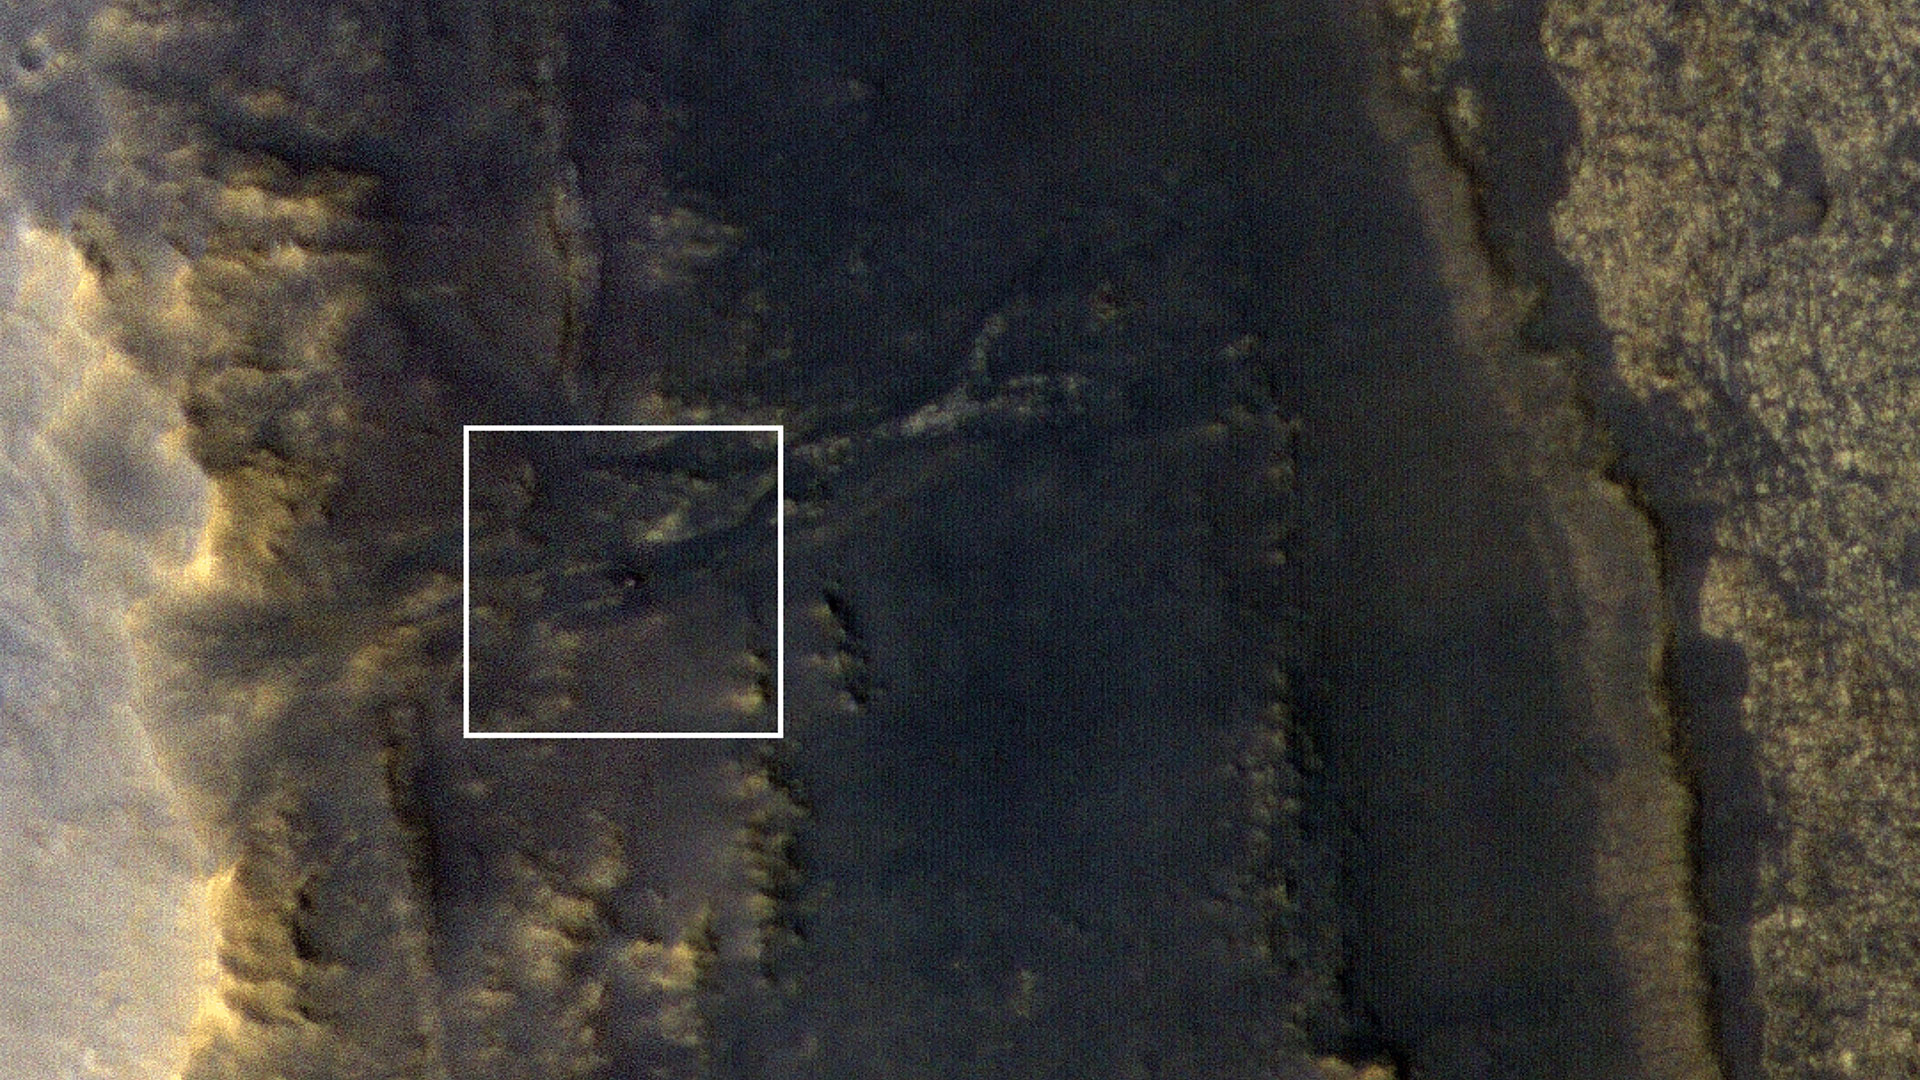 La fotografía, captada con una cámara de alta resolución HiRISE, ha provocado el optimismo en la NASA, puesto que no tenía ningún tipo de contacto con su vehículo desde el pasado 10 de junio